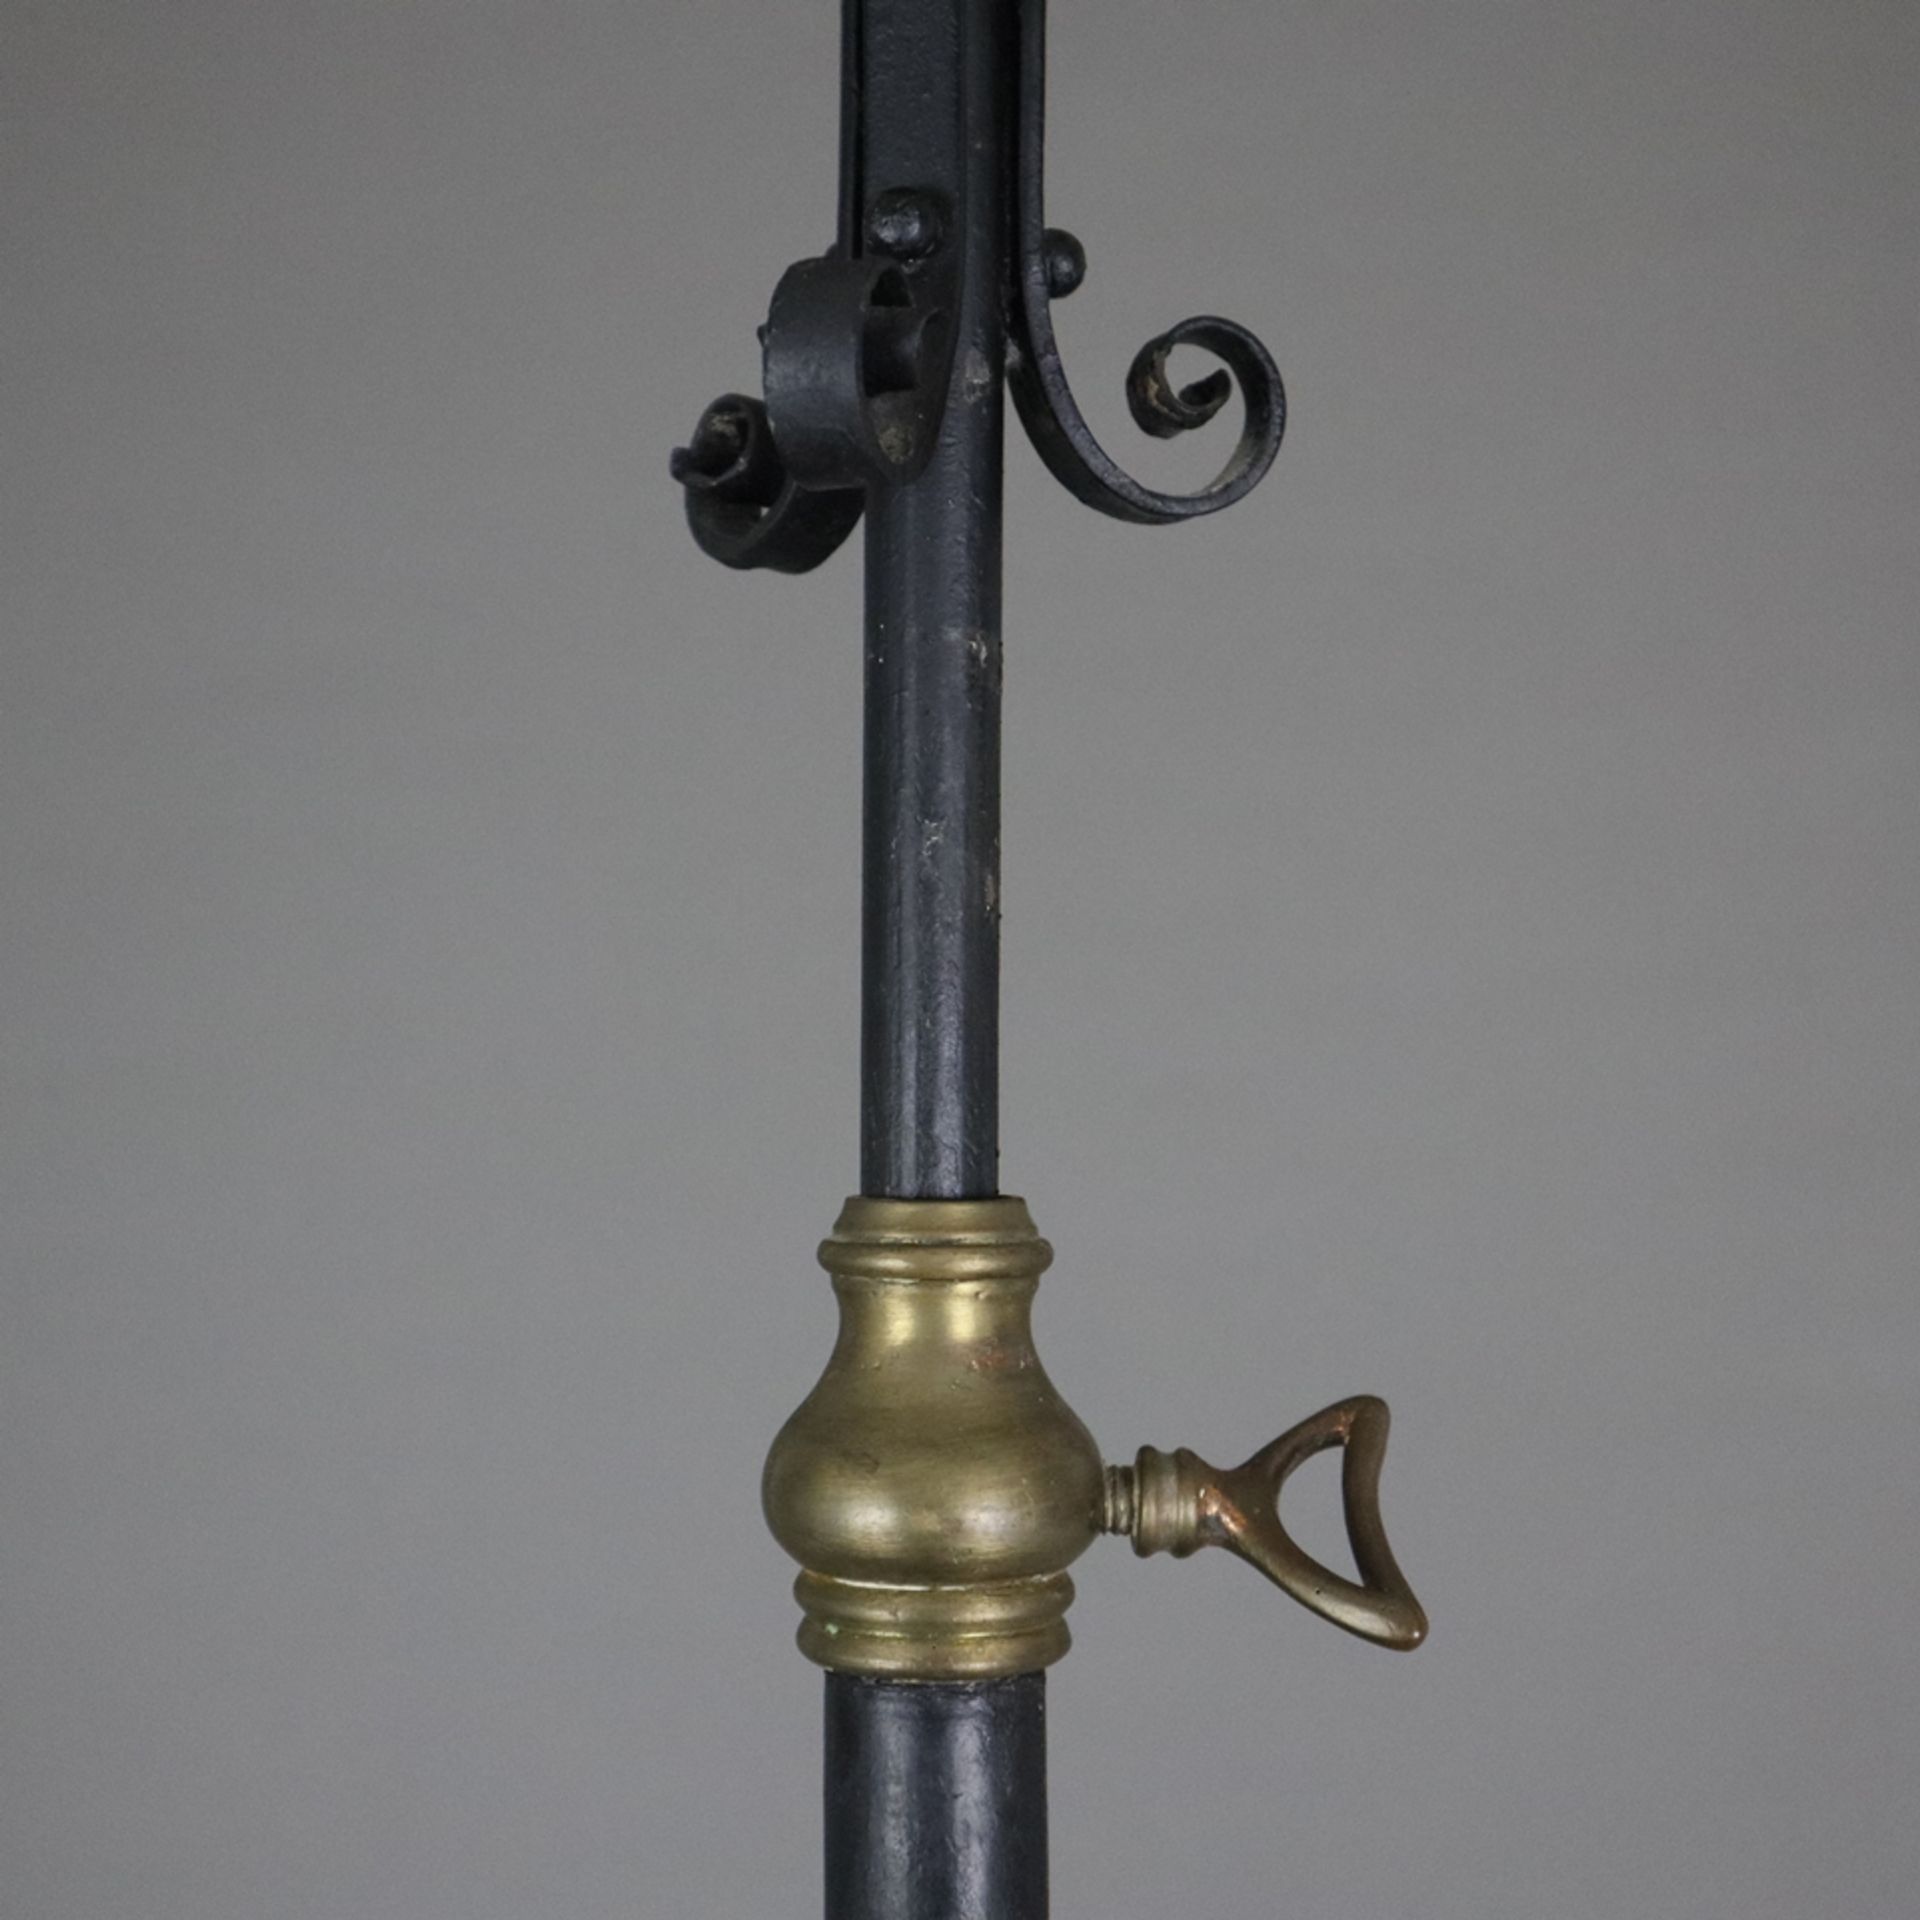 Stehlampe - Ende 19. Jh. / um 1900, Kunstschmiedeeisen-Gestell mit Volutendekor, geschwärzt, farblo - Bild 6 aus 10